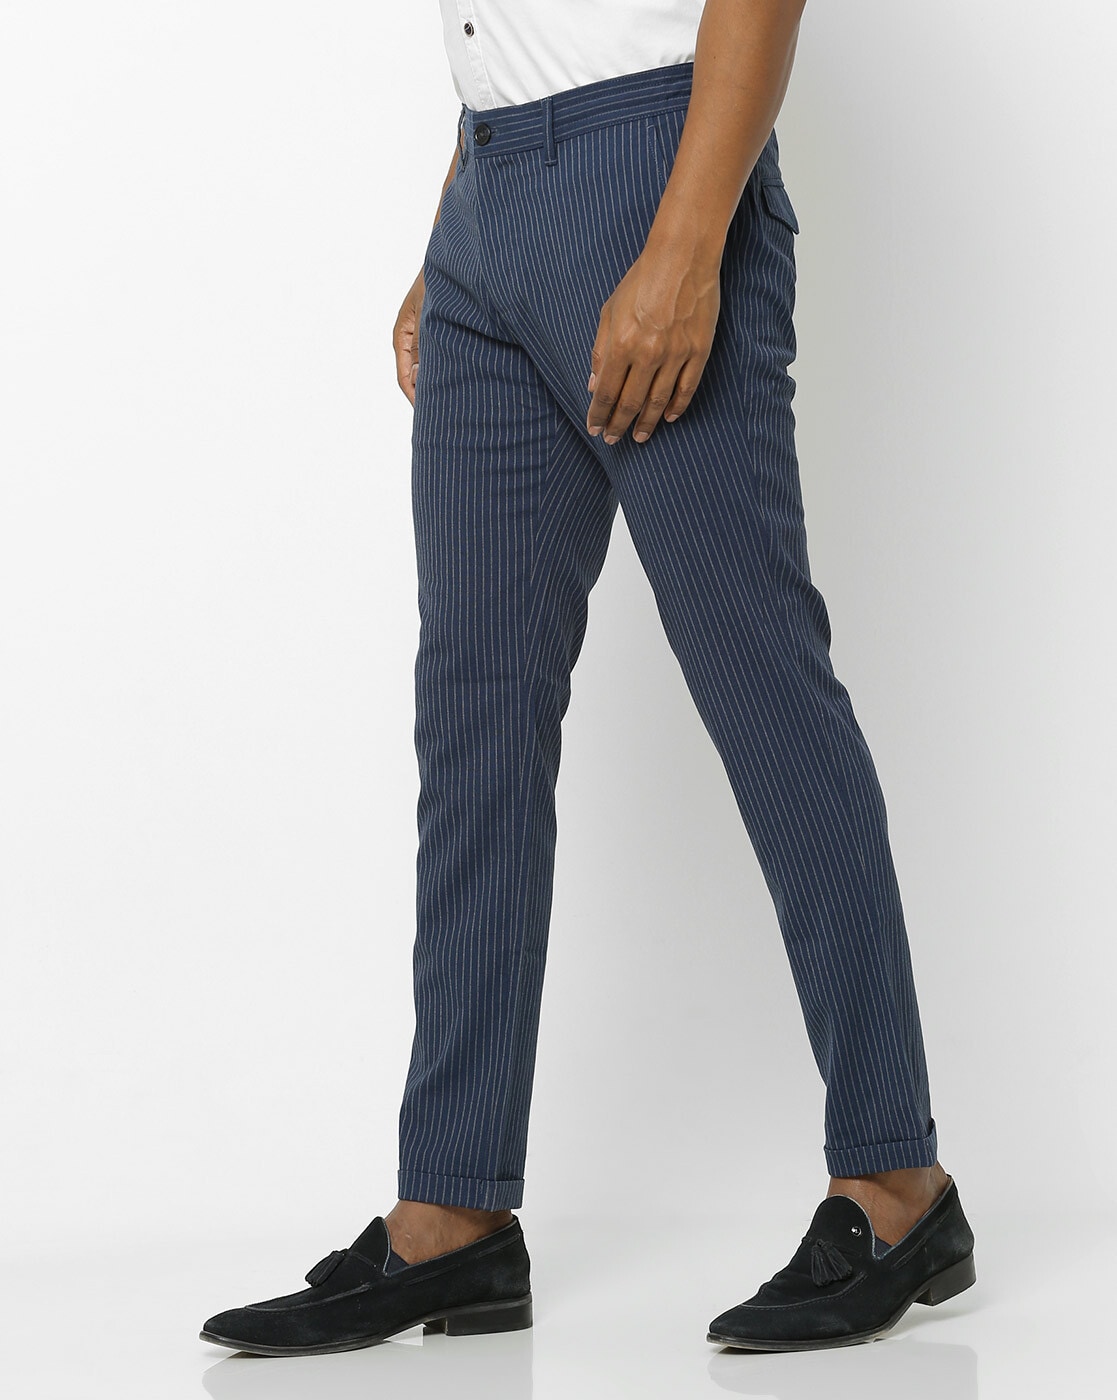 Indian Terrain Trousers  Buy Indian Terrain Trousers Online  Myntra